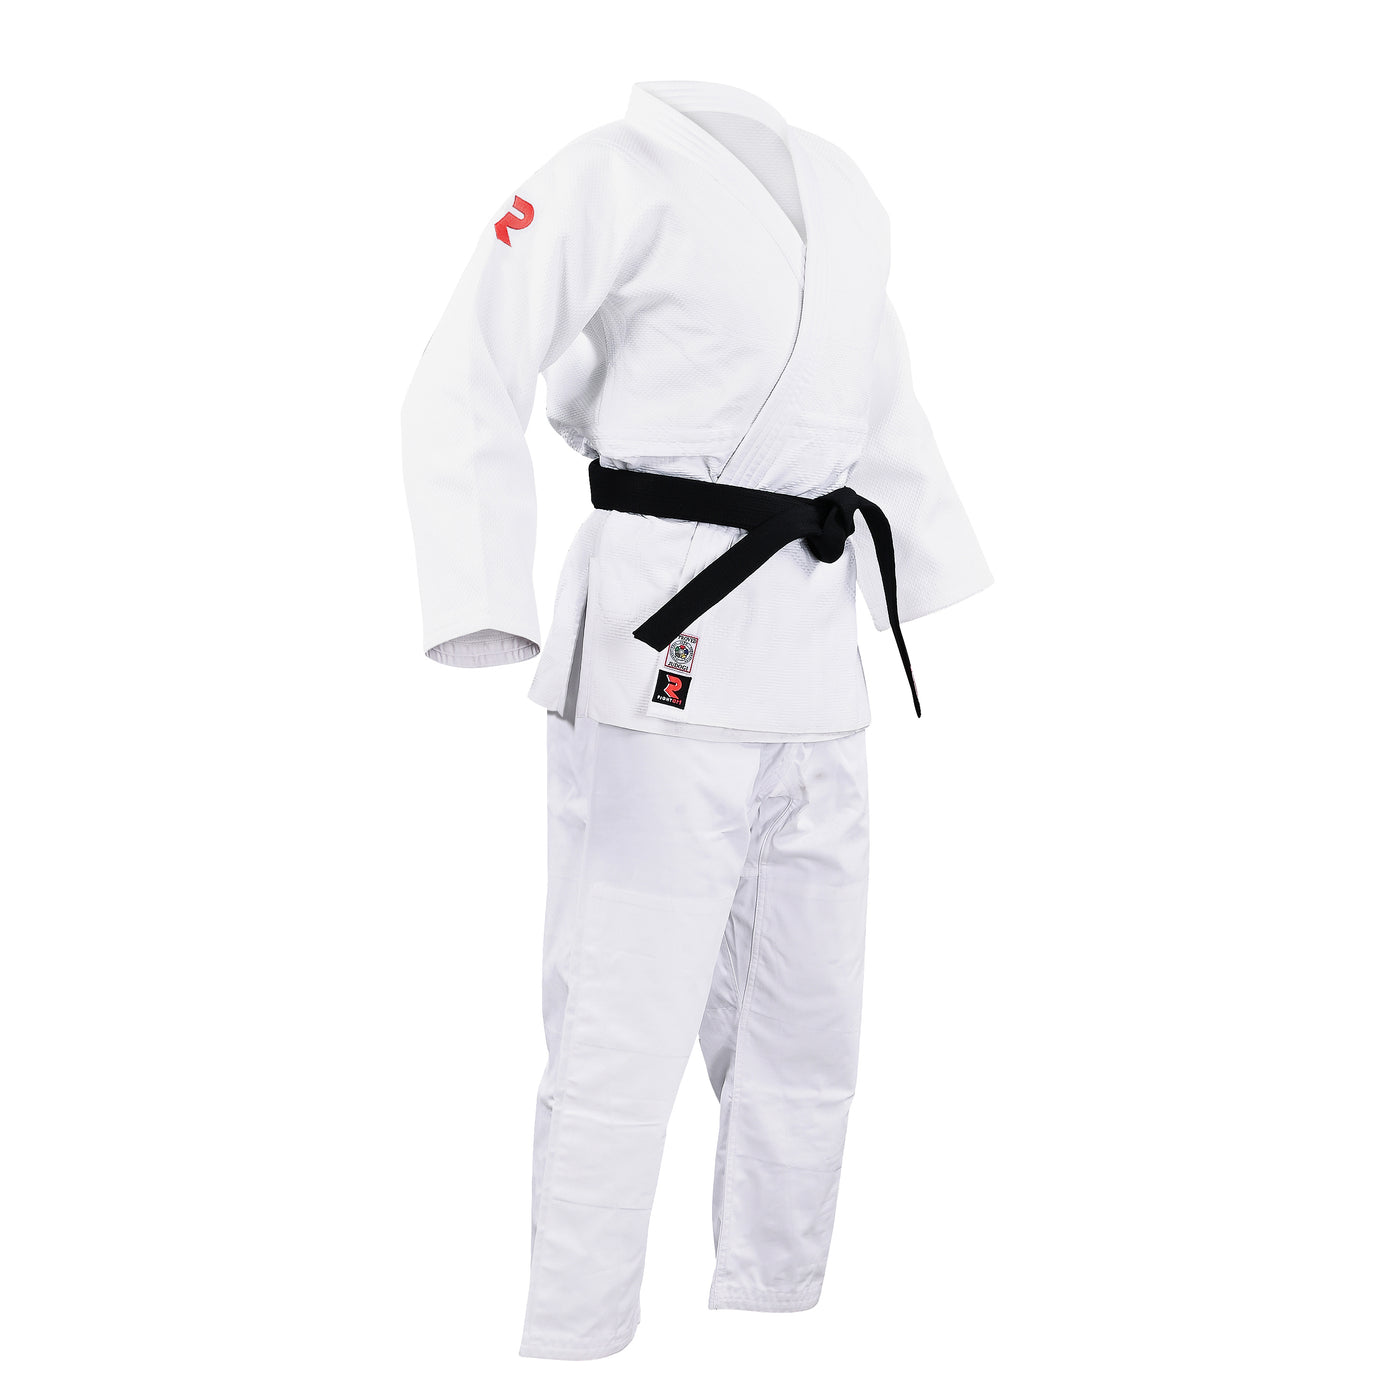 Judo Competition Kimono - IJF Approved - Shogun Model (White)